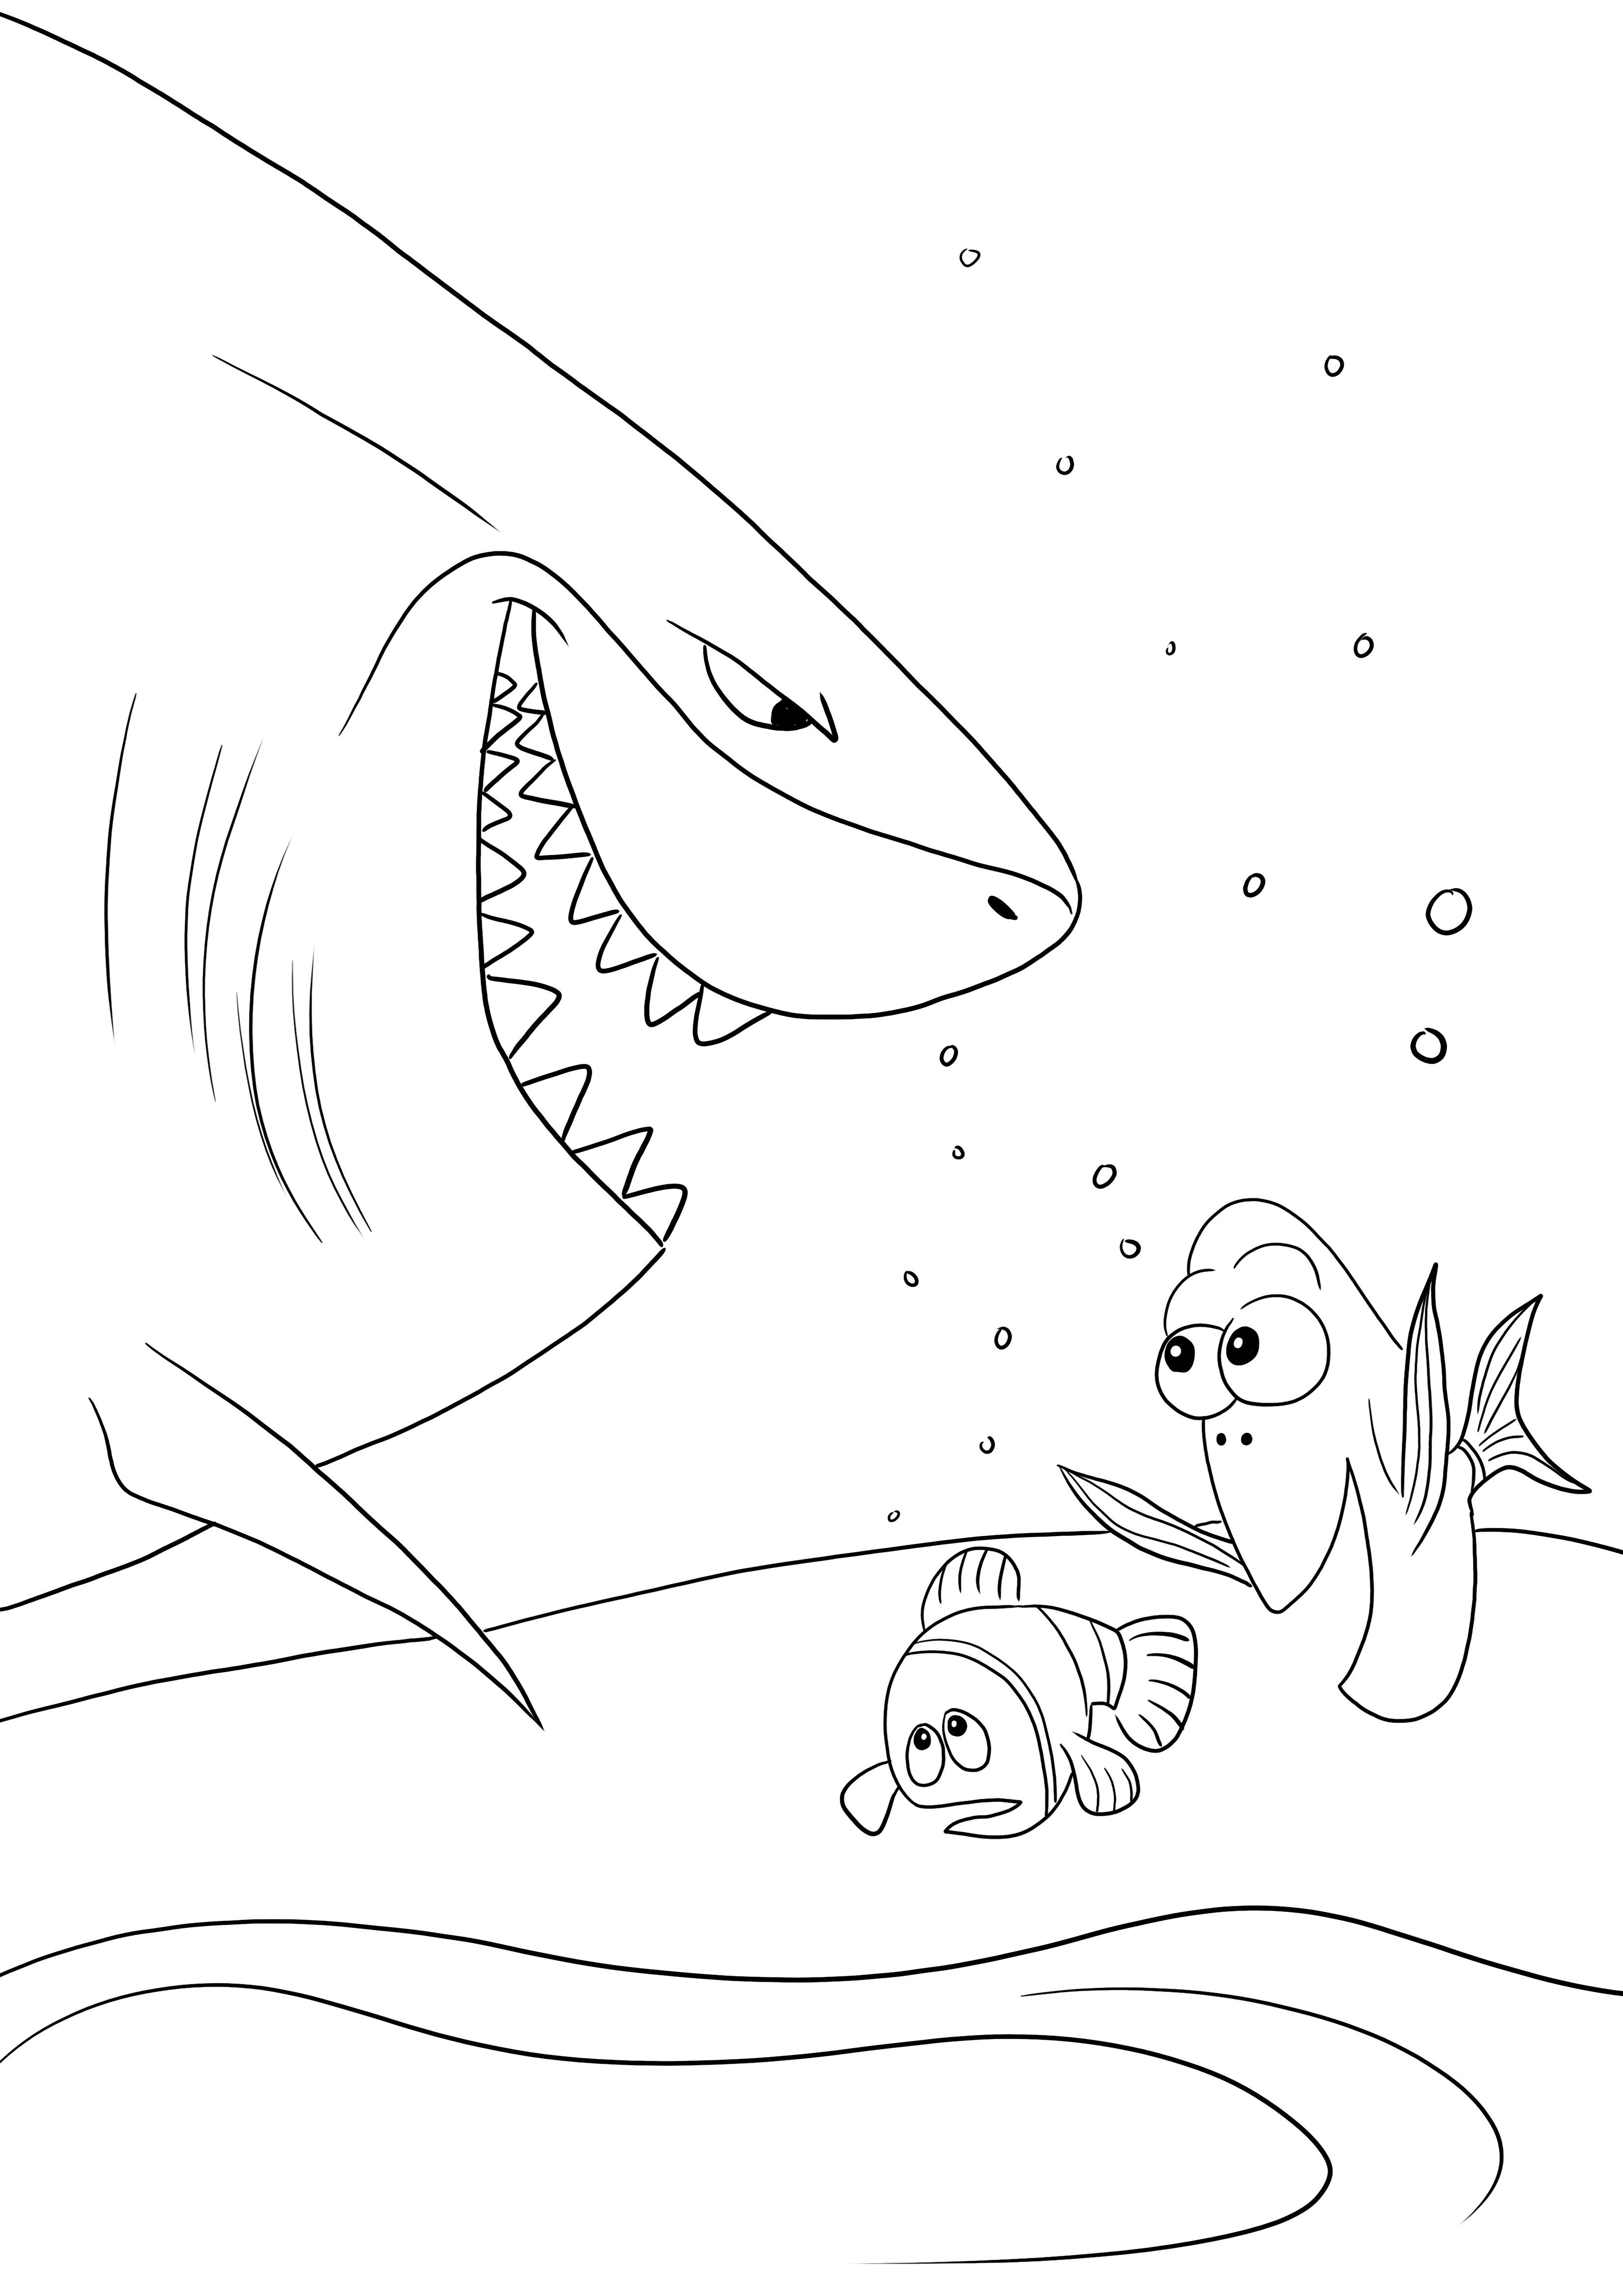 Bruce-Dory-Nemo találkozik ingyenesen, hogy kinyomtassa vagy elmentse későbbi képre